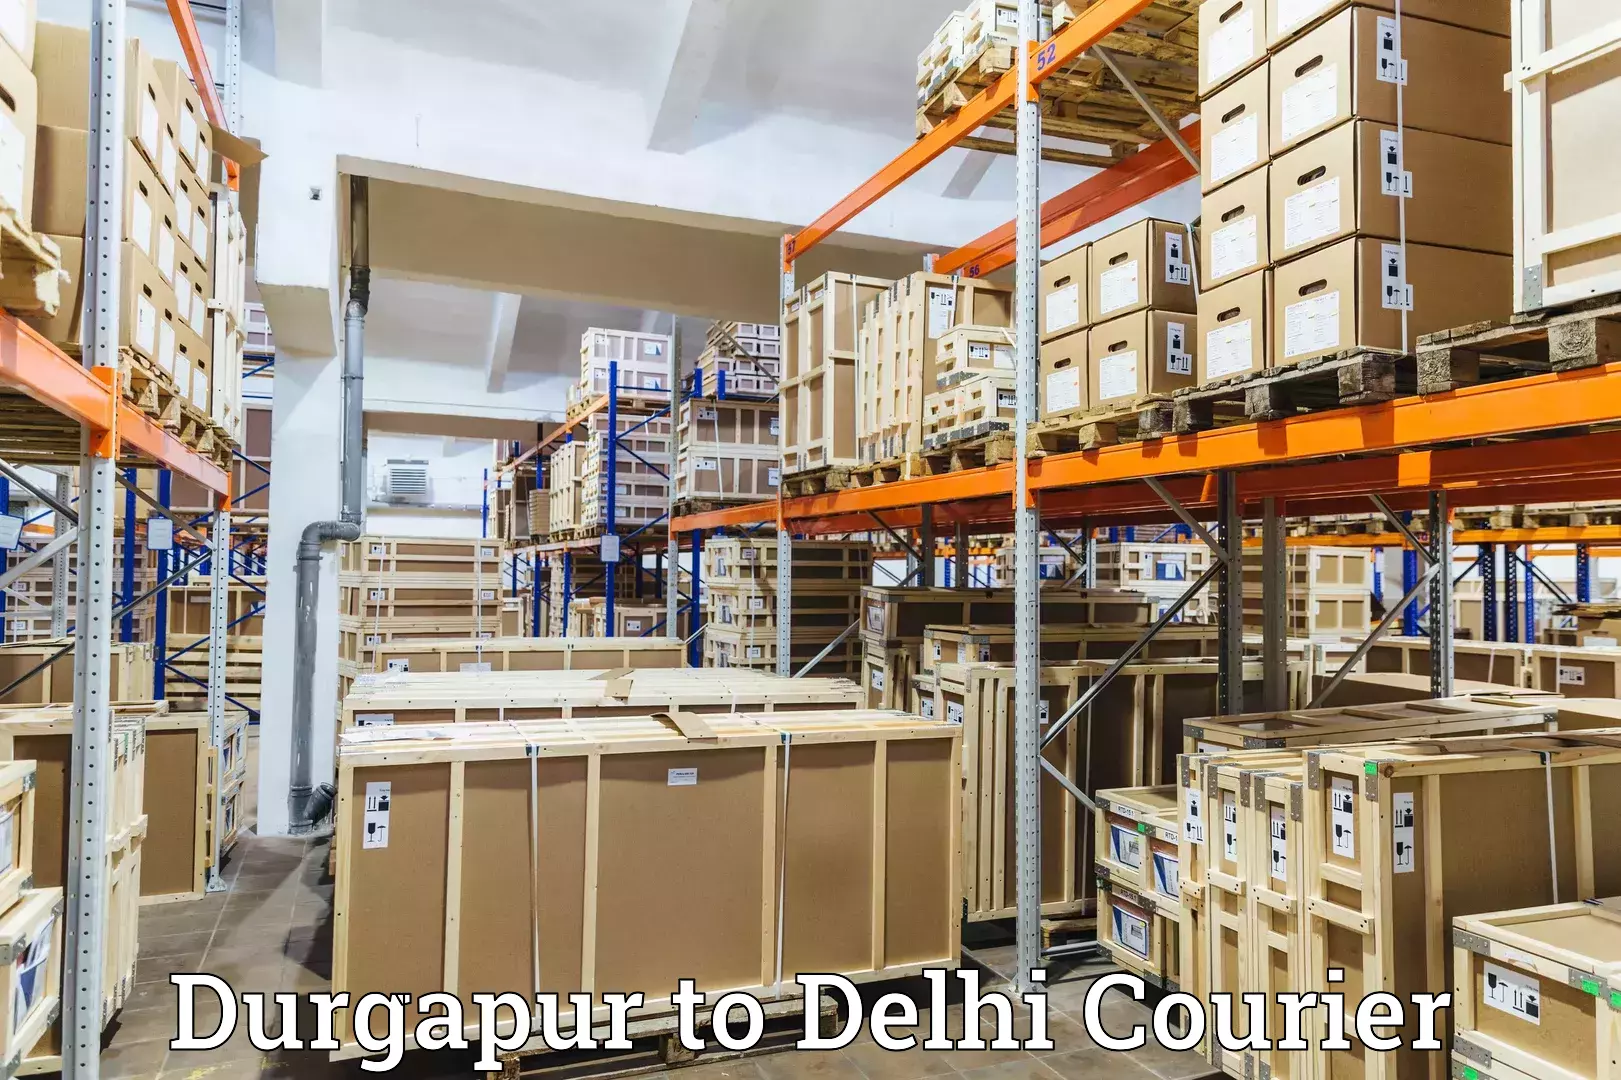 Digital courier platforms in Durgapur to Delhi